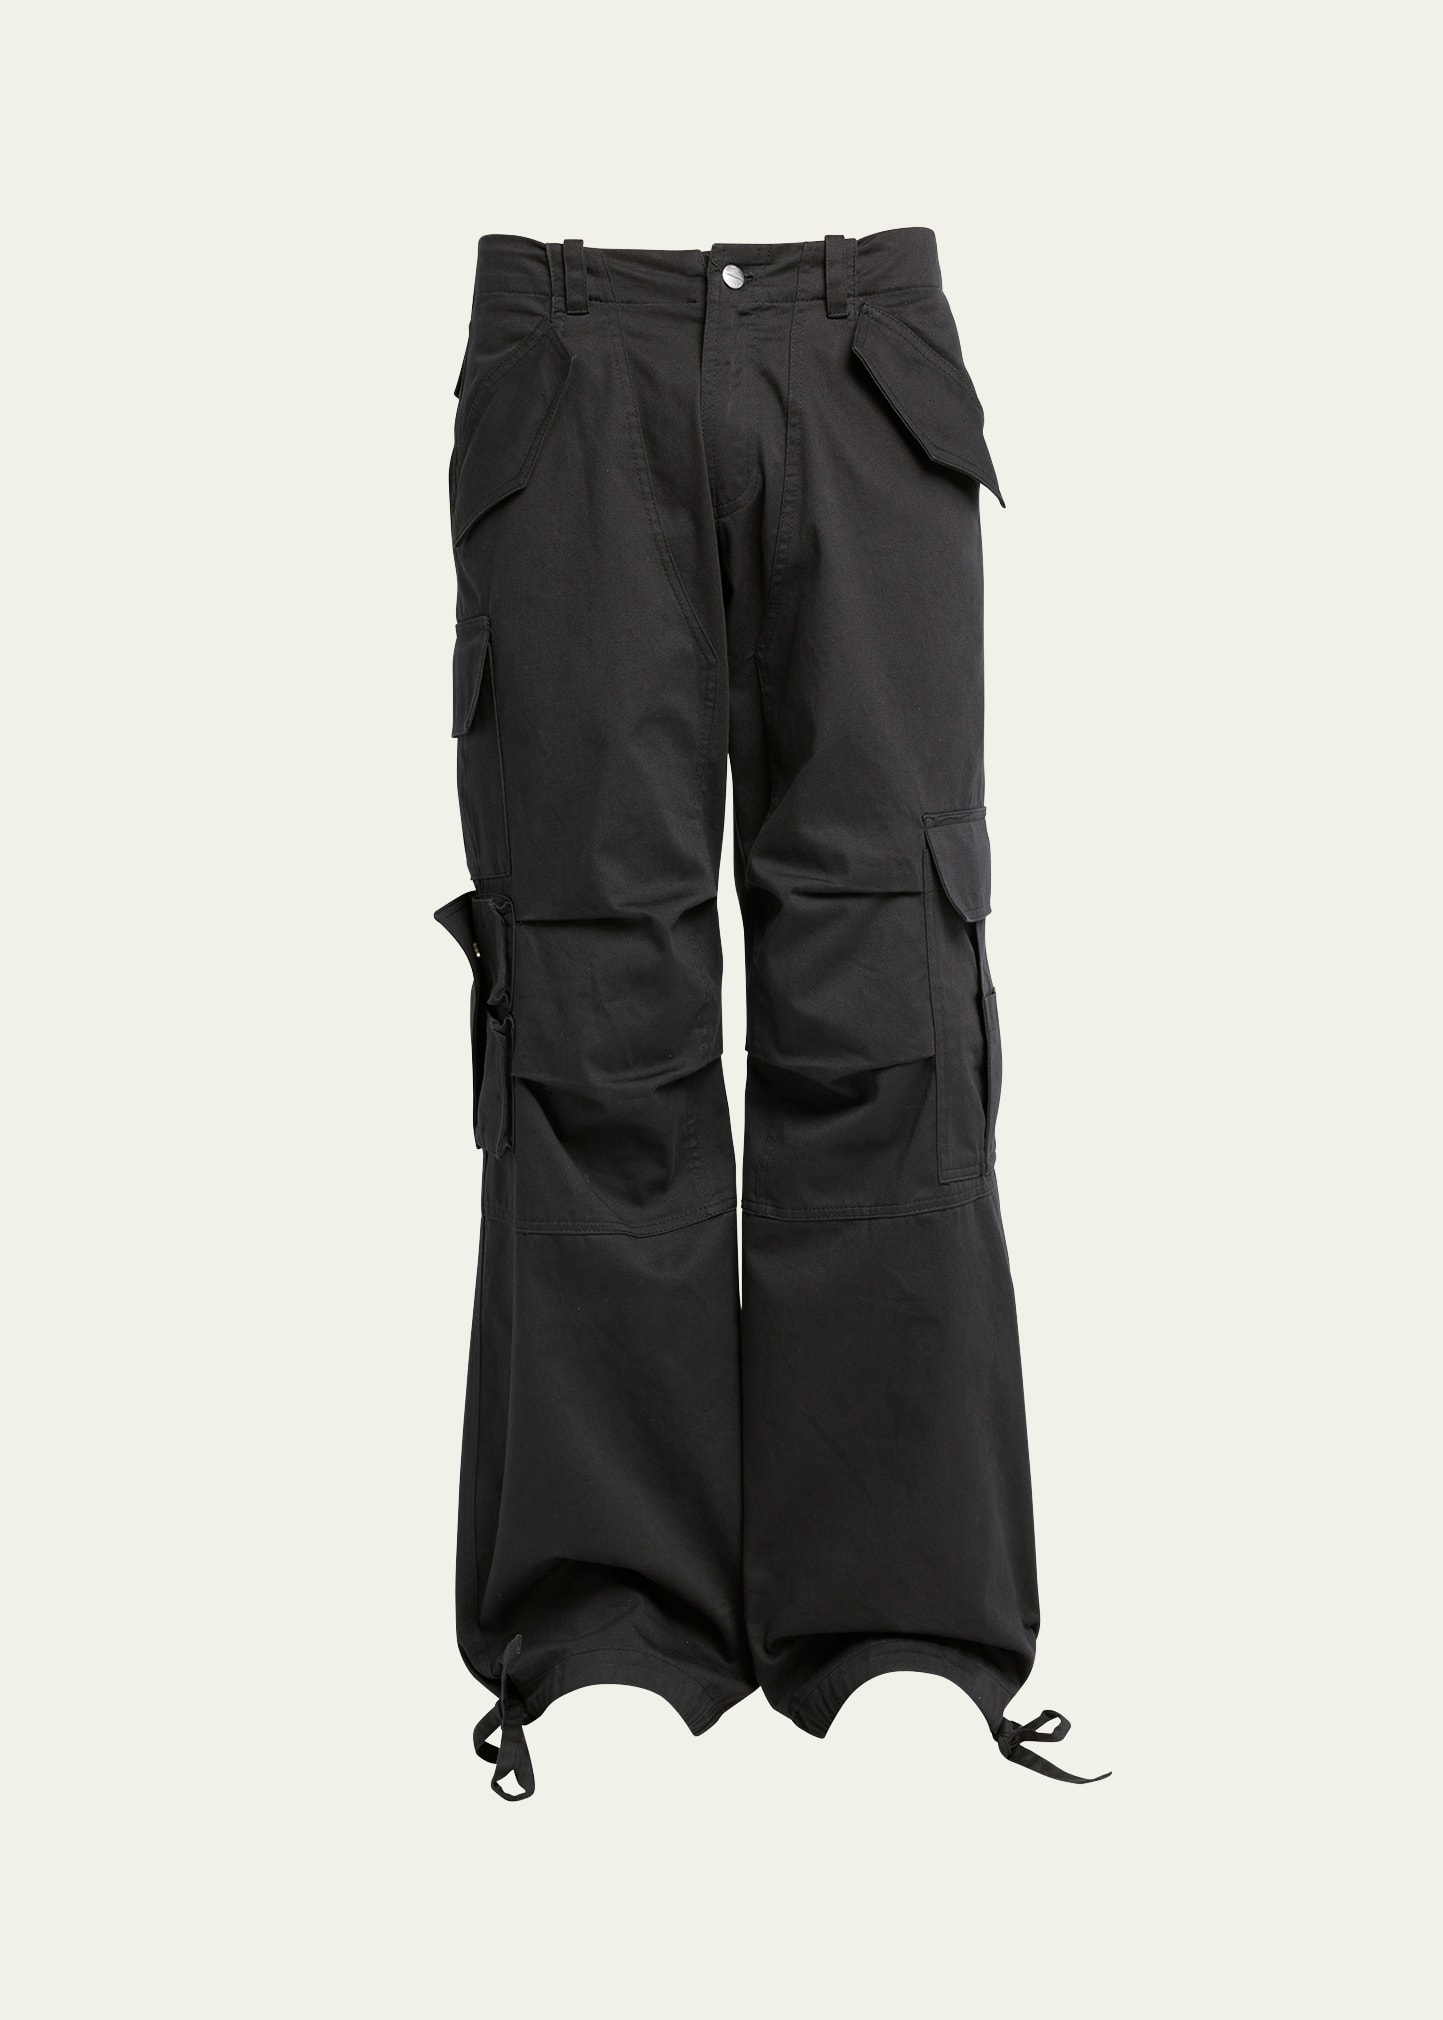 Men's Corda Ski Cargo Pants